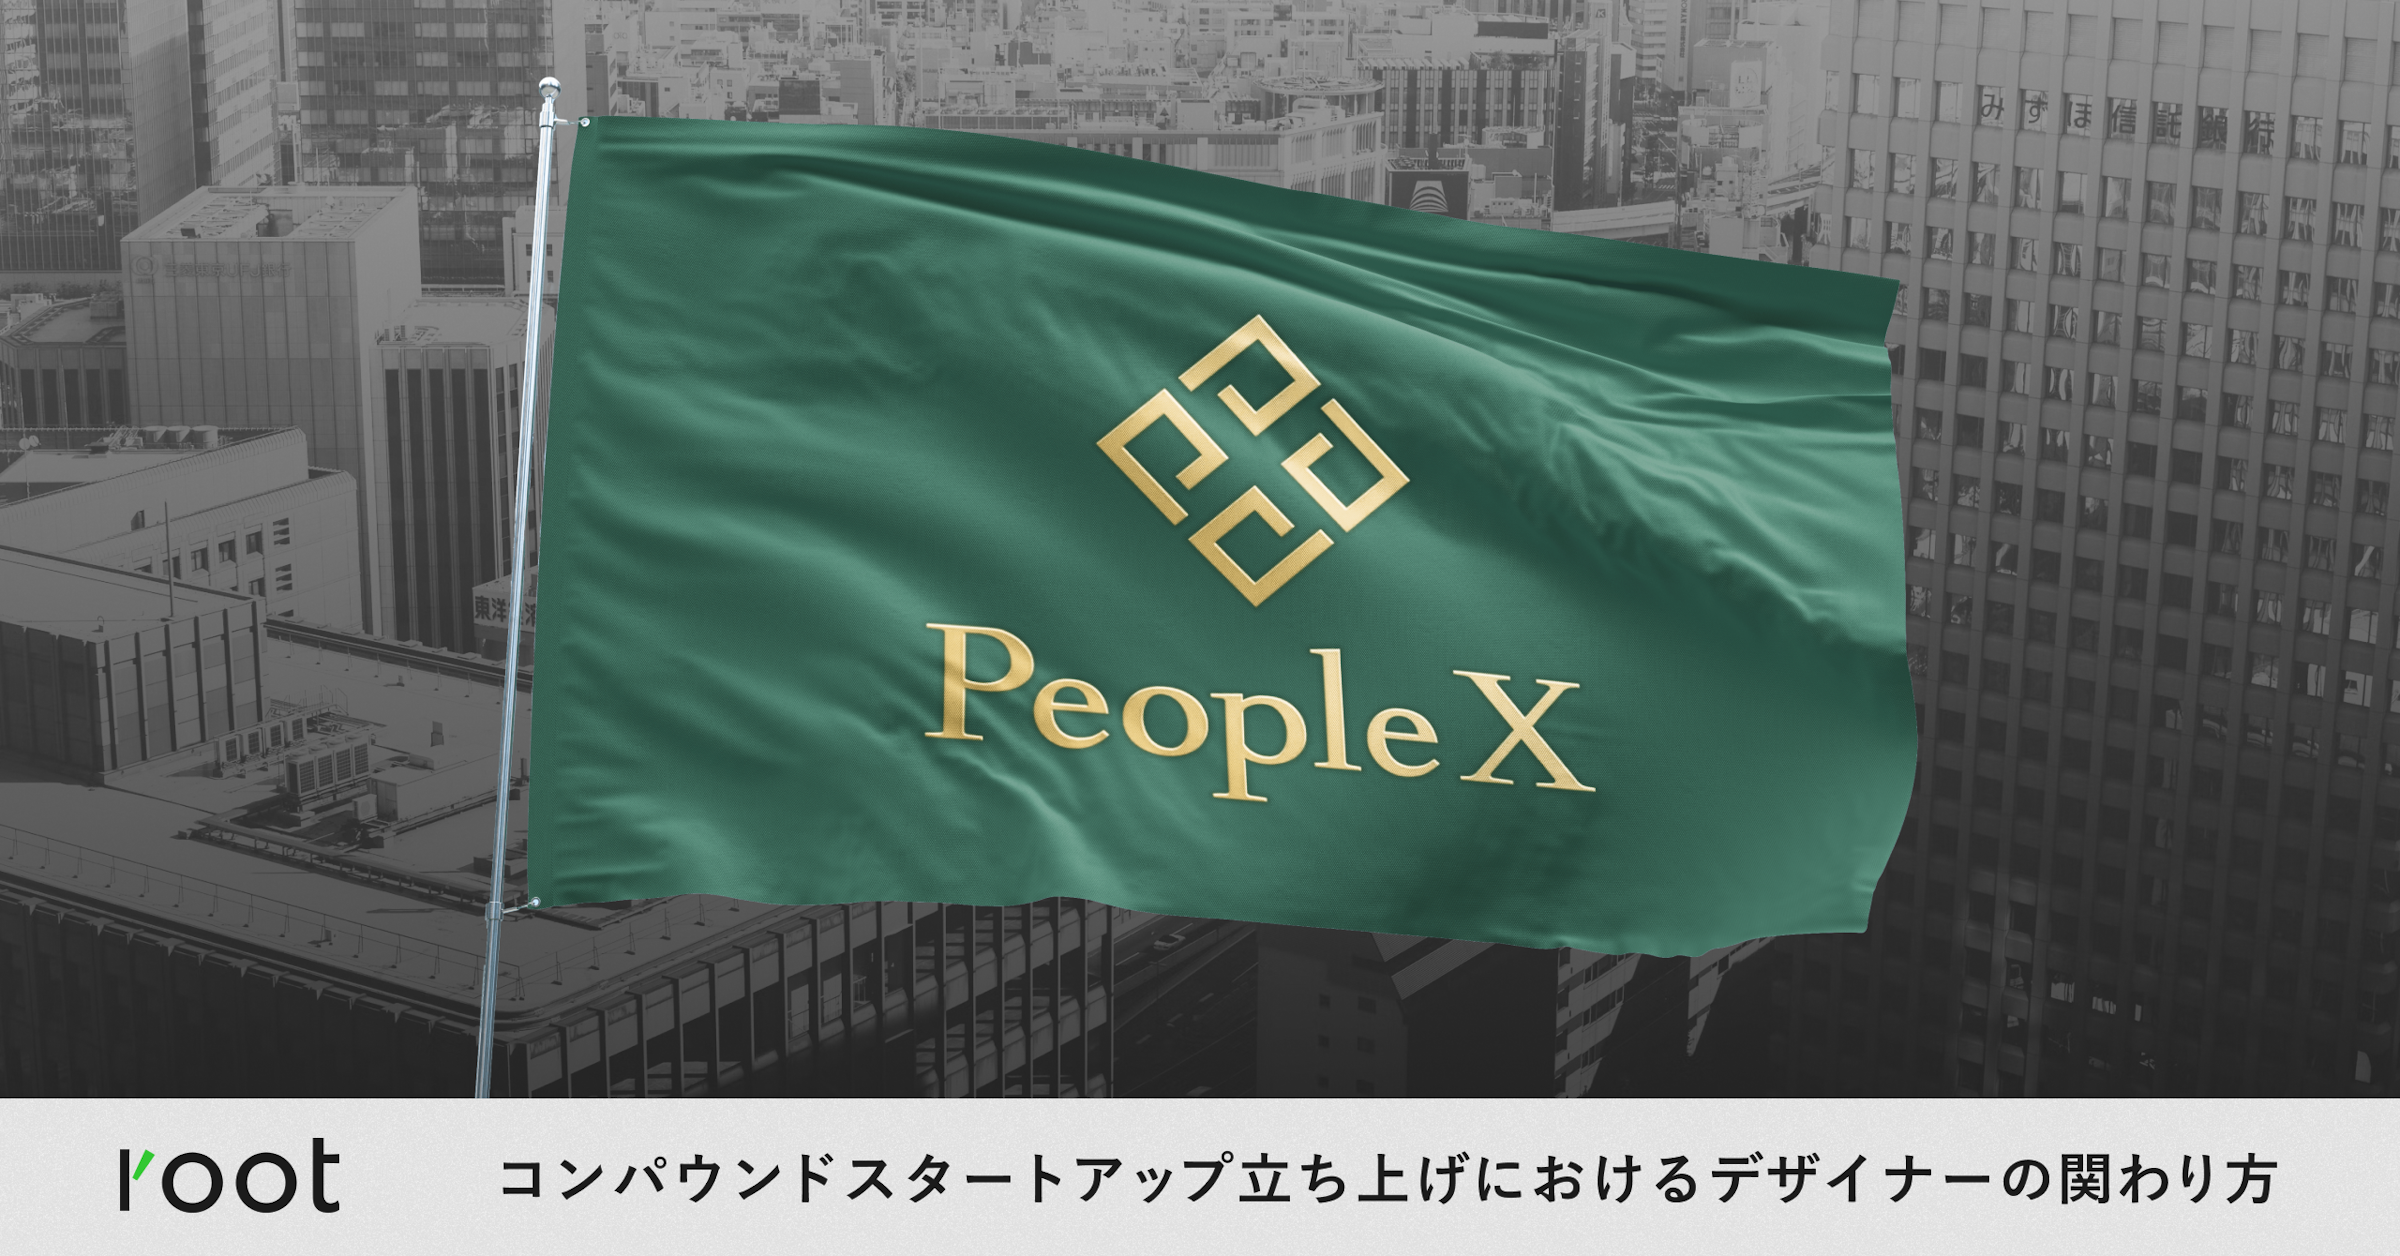 PeopleXでの、コンパウンドスタートアップ立ち上げにおけるデザイナーの関わり方について